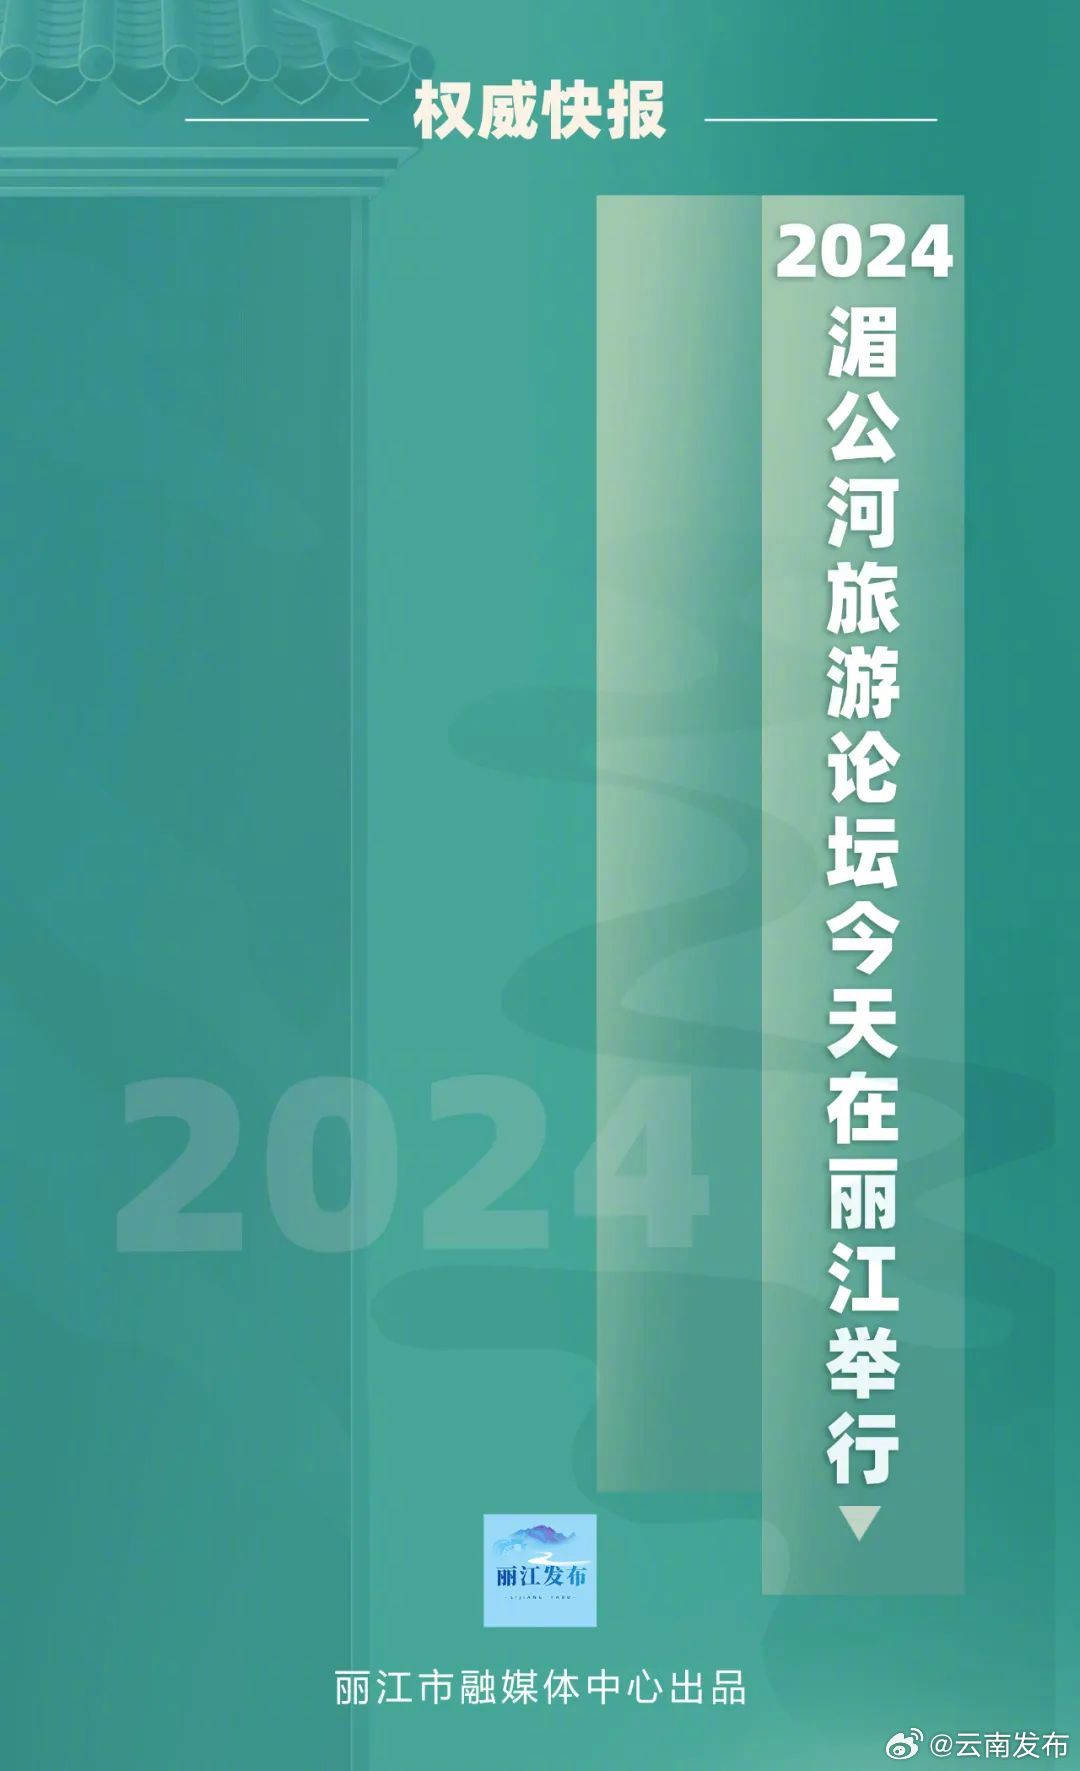 2024湄公河旅游论坛今日在丽江举行